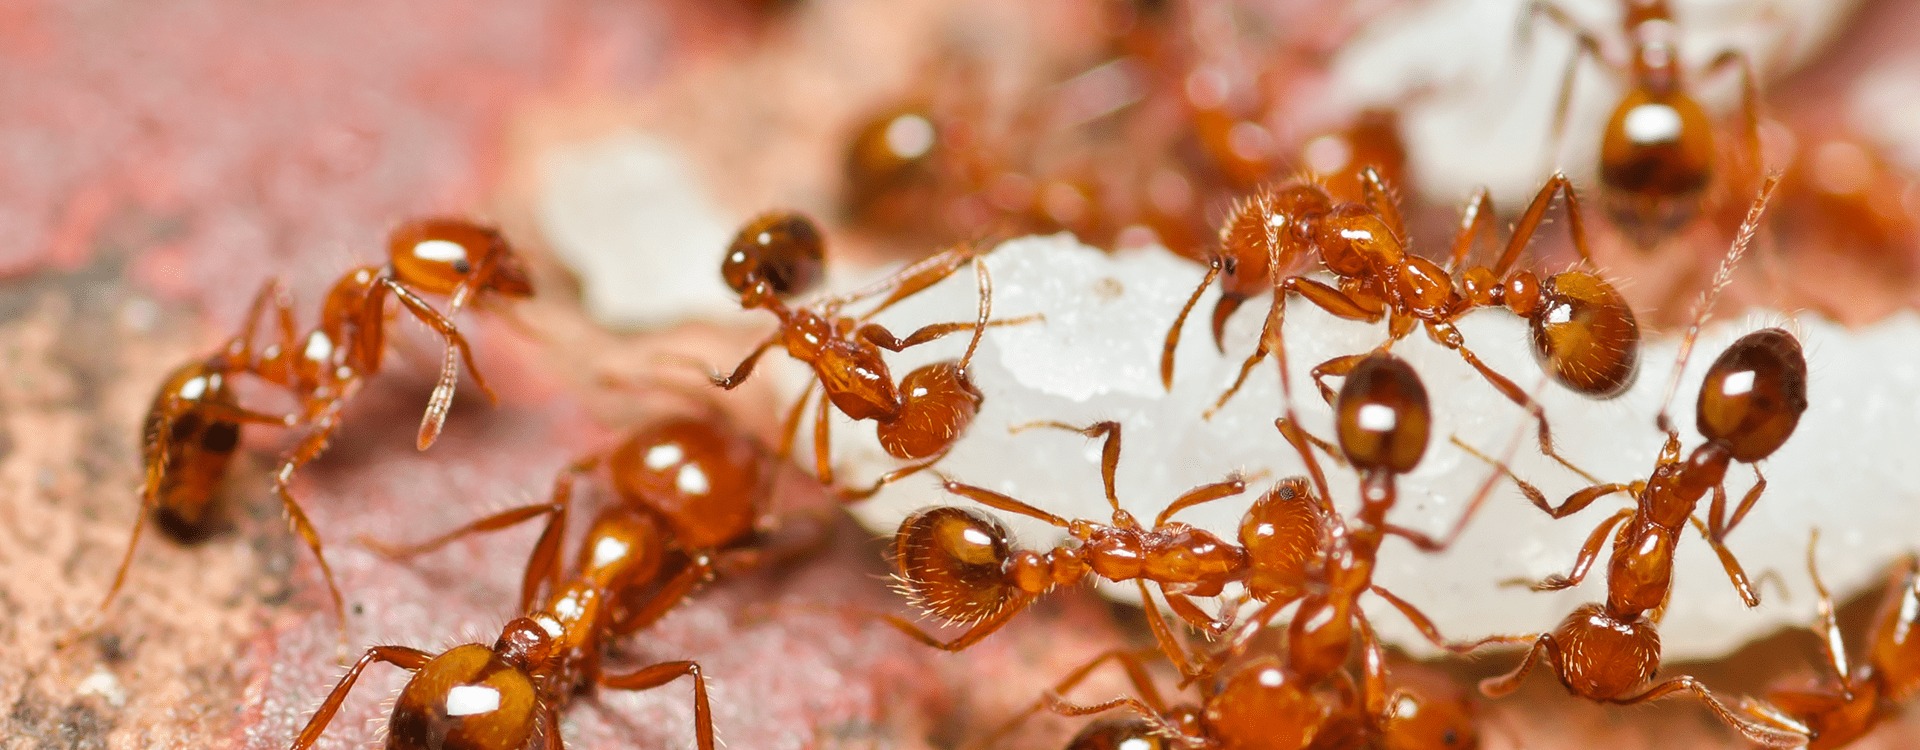 Огненные муравьи: описание и фото